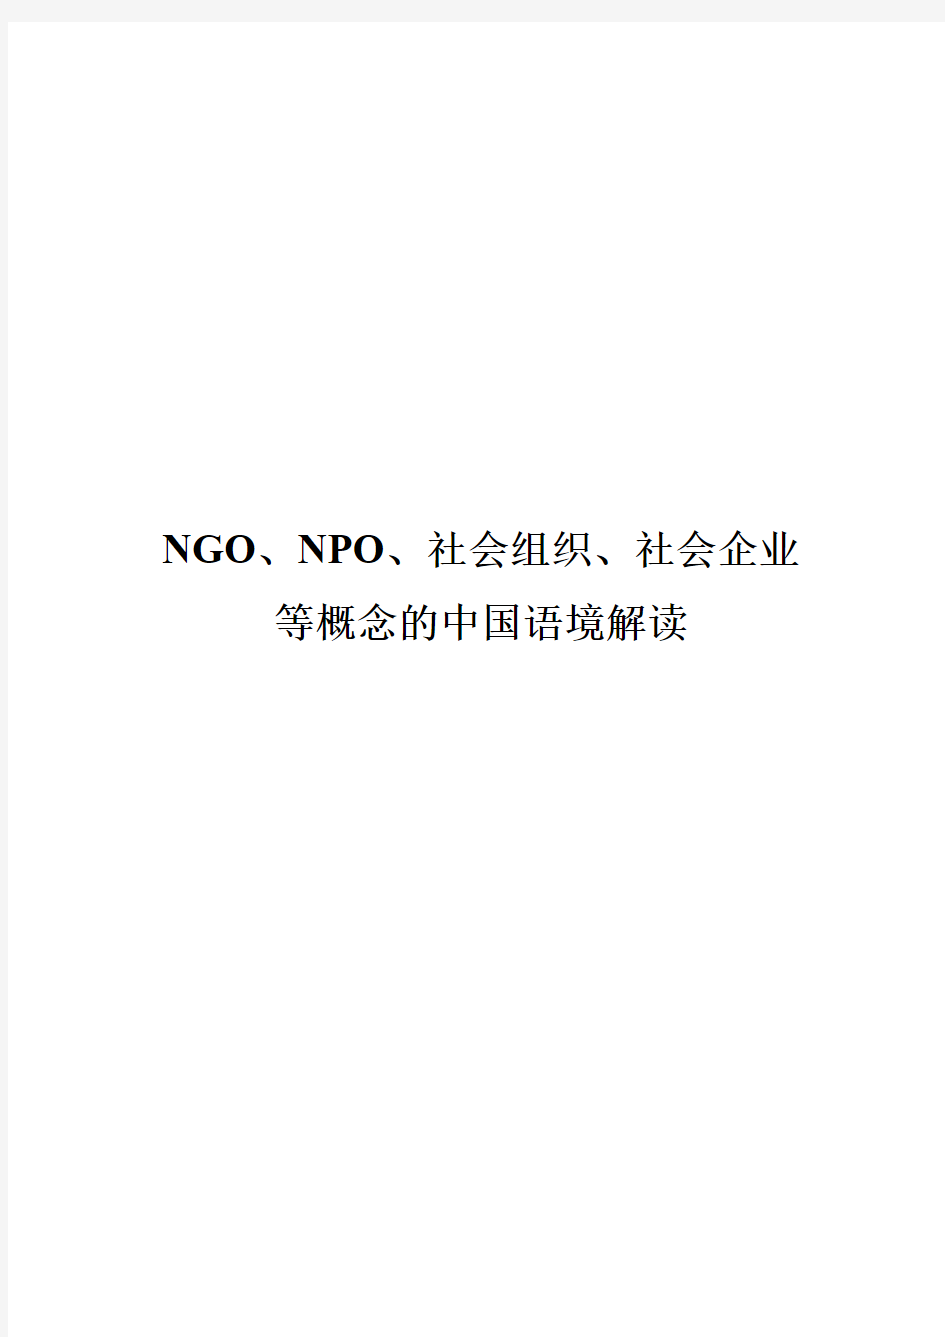 NGO、NPO、社会组织、社会企业等概念的中国语境解读